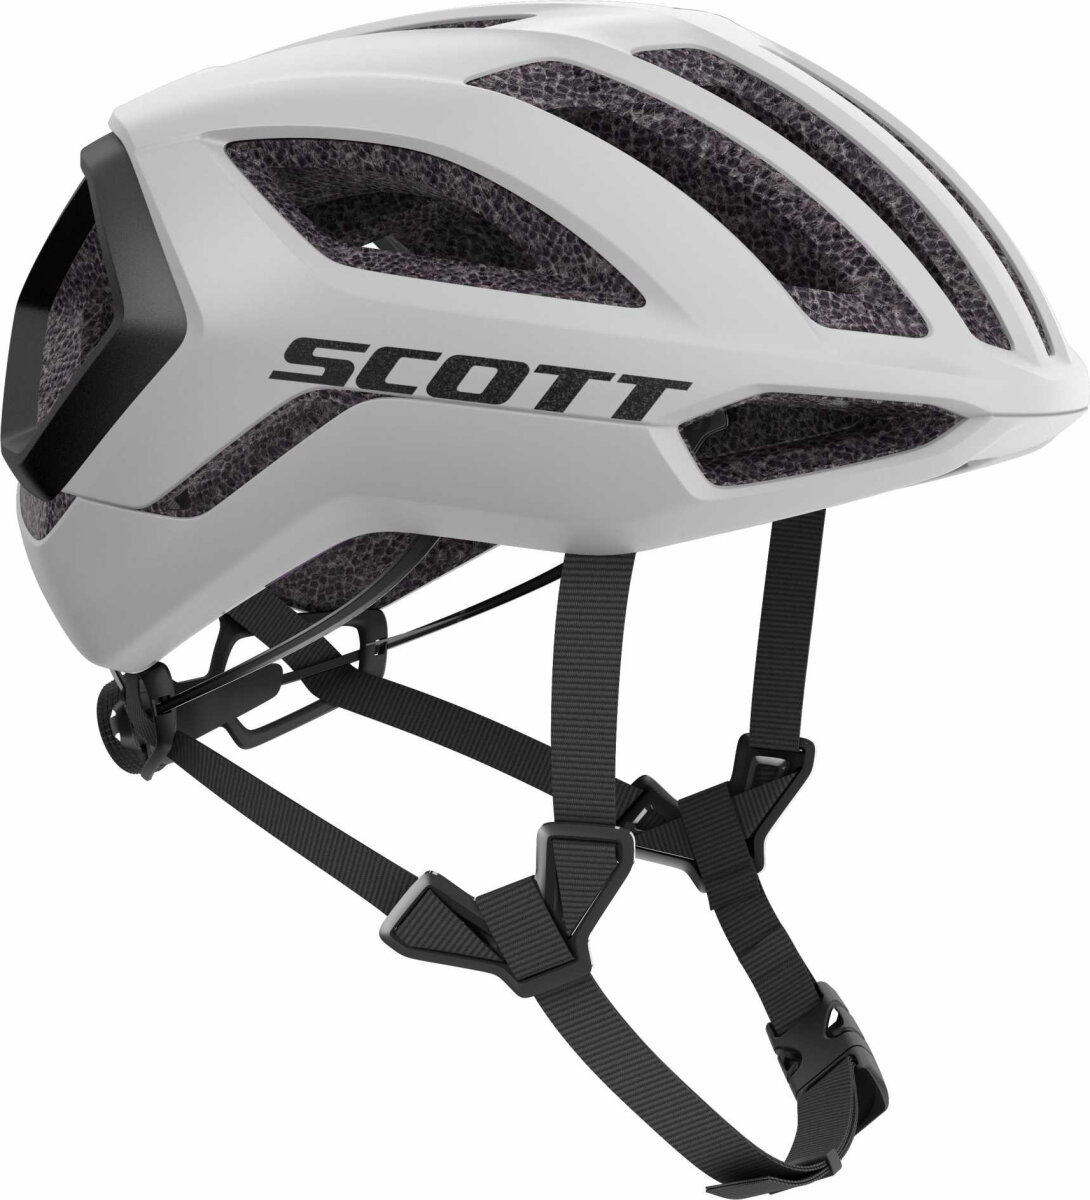 Шлем Scott Centric Plus бело-черный 280405.1035.008, 280405.1035.007